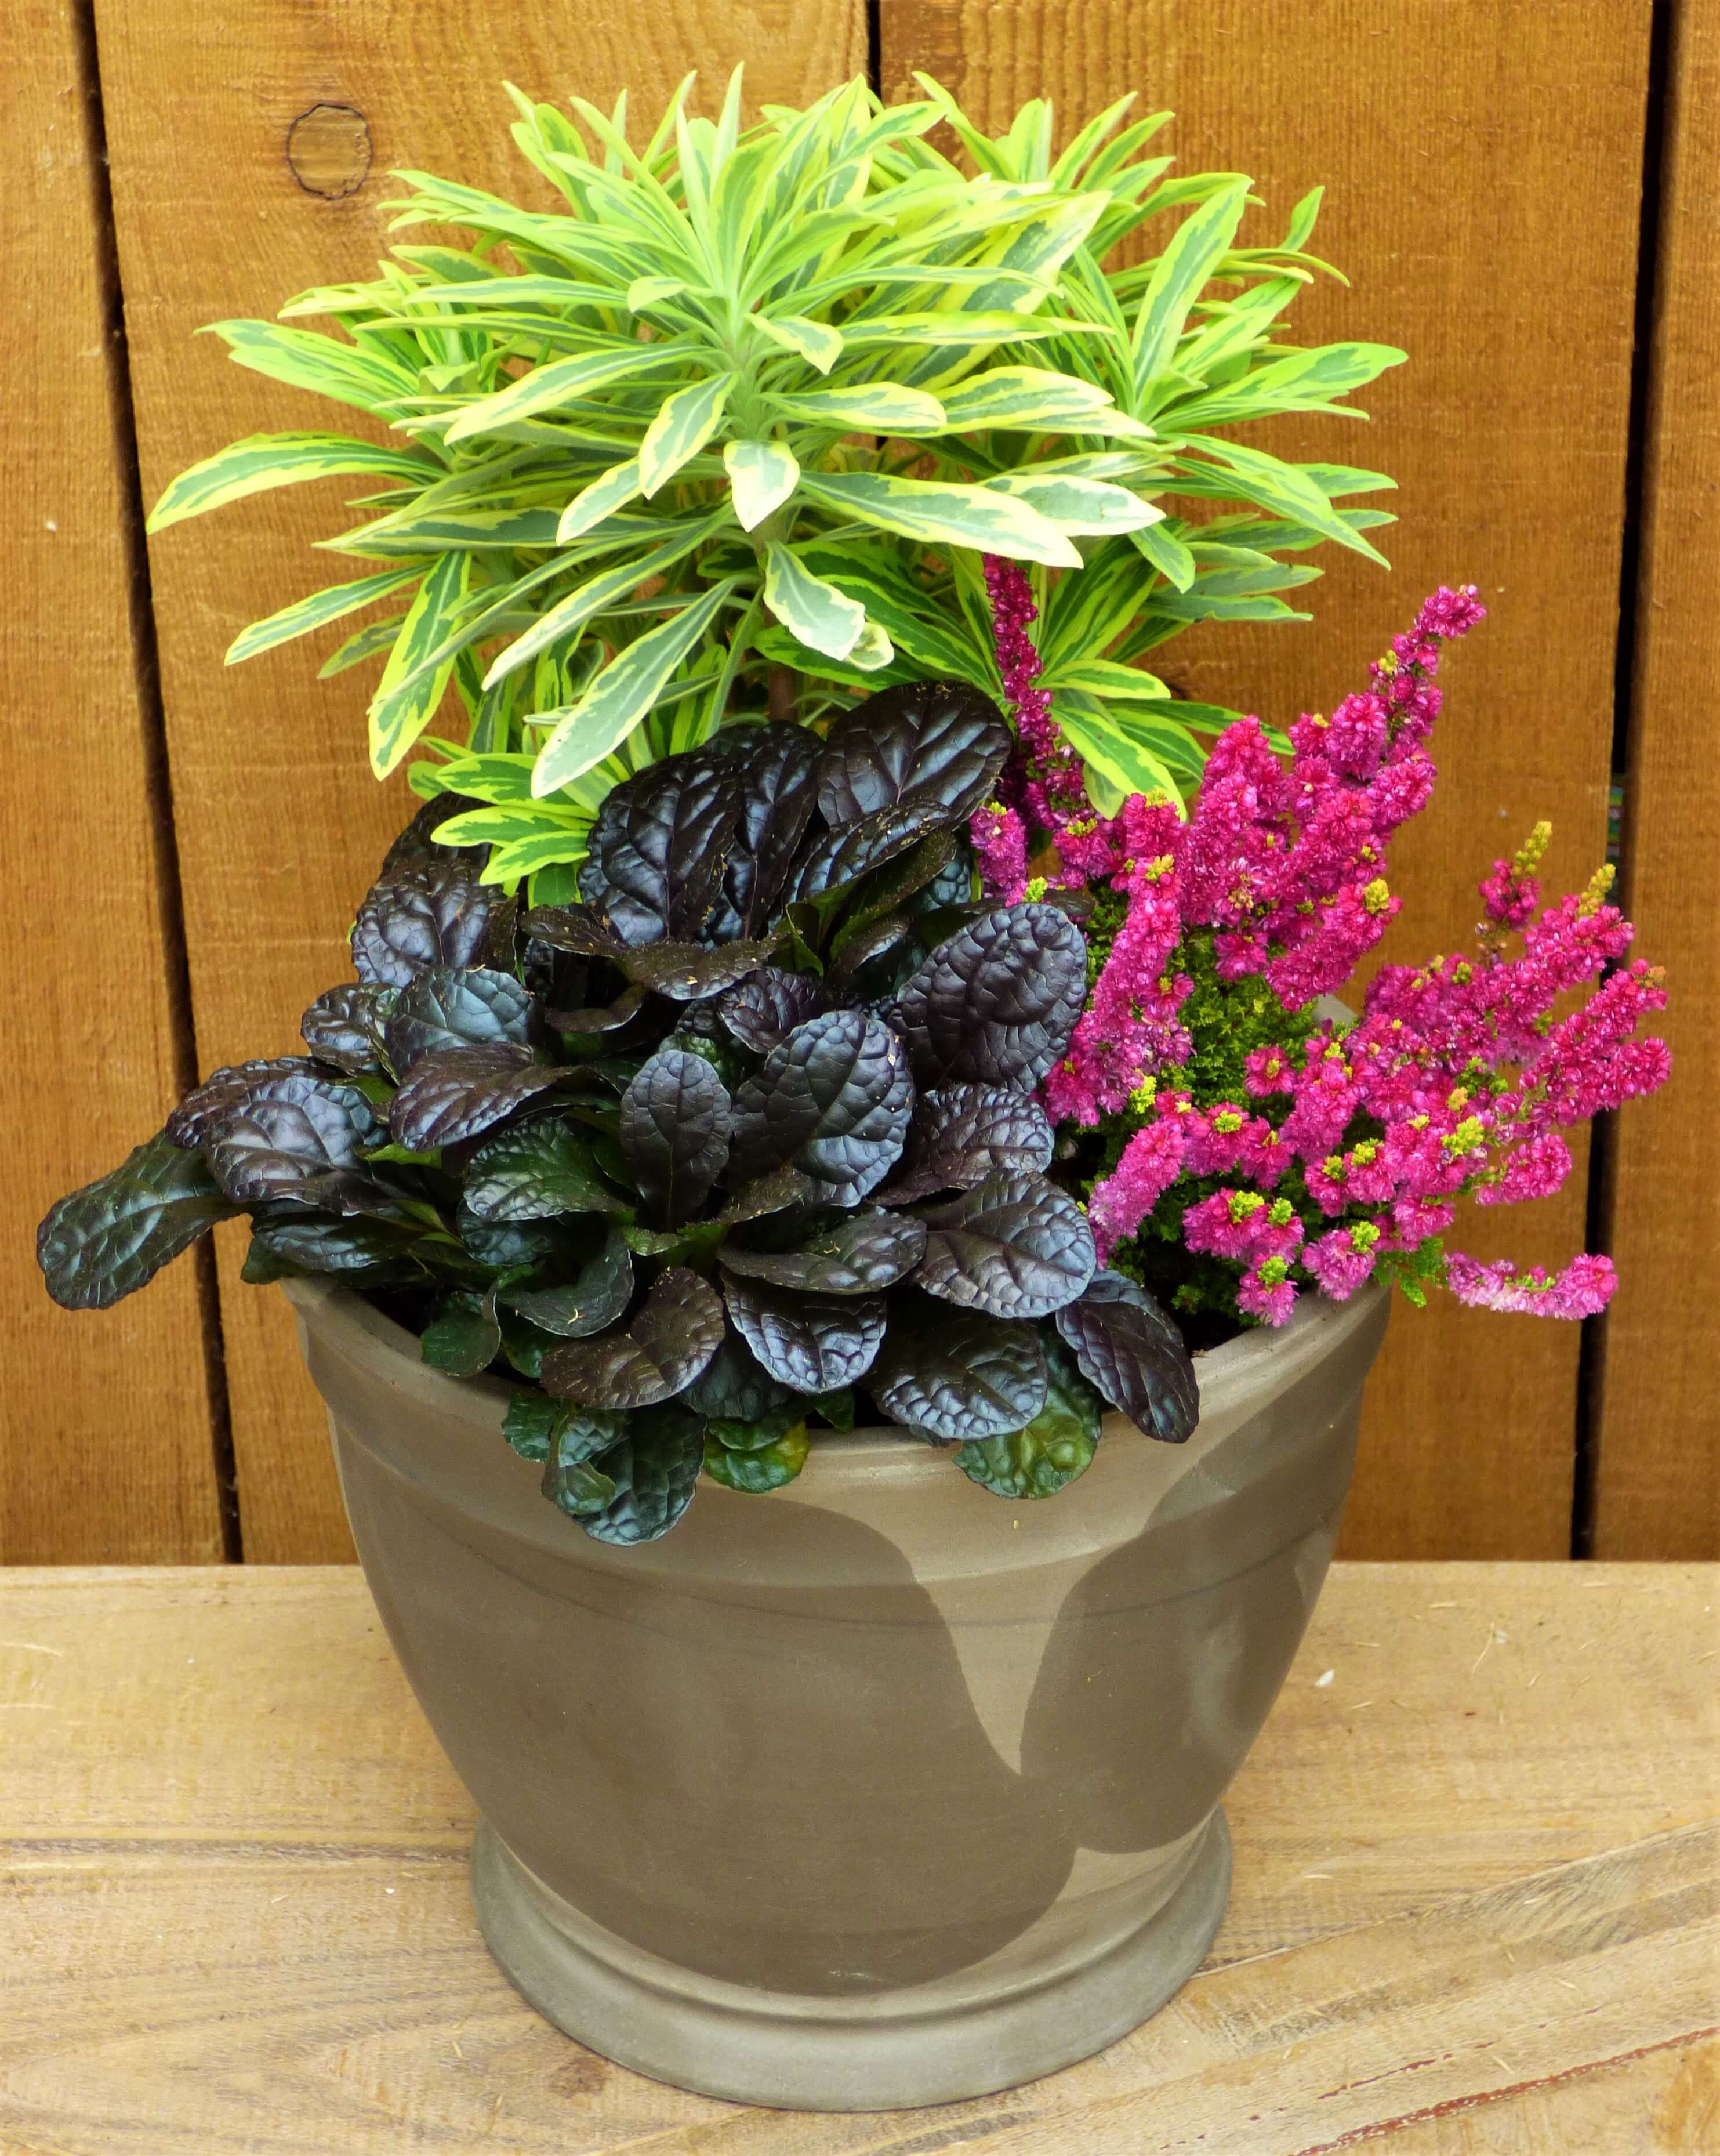 Planter 2 – Euphorbia ‘Ascot Rainbow’, Calluna ‘Yellow Beauty’, Ajuga ‘Mahogany’